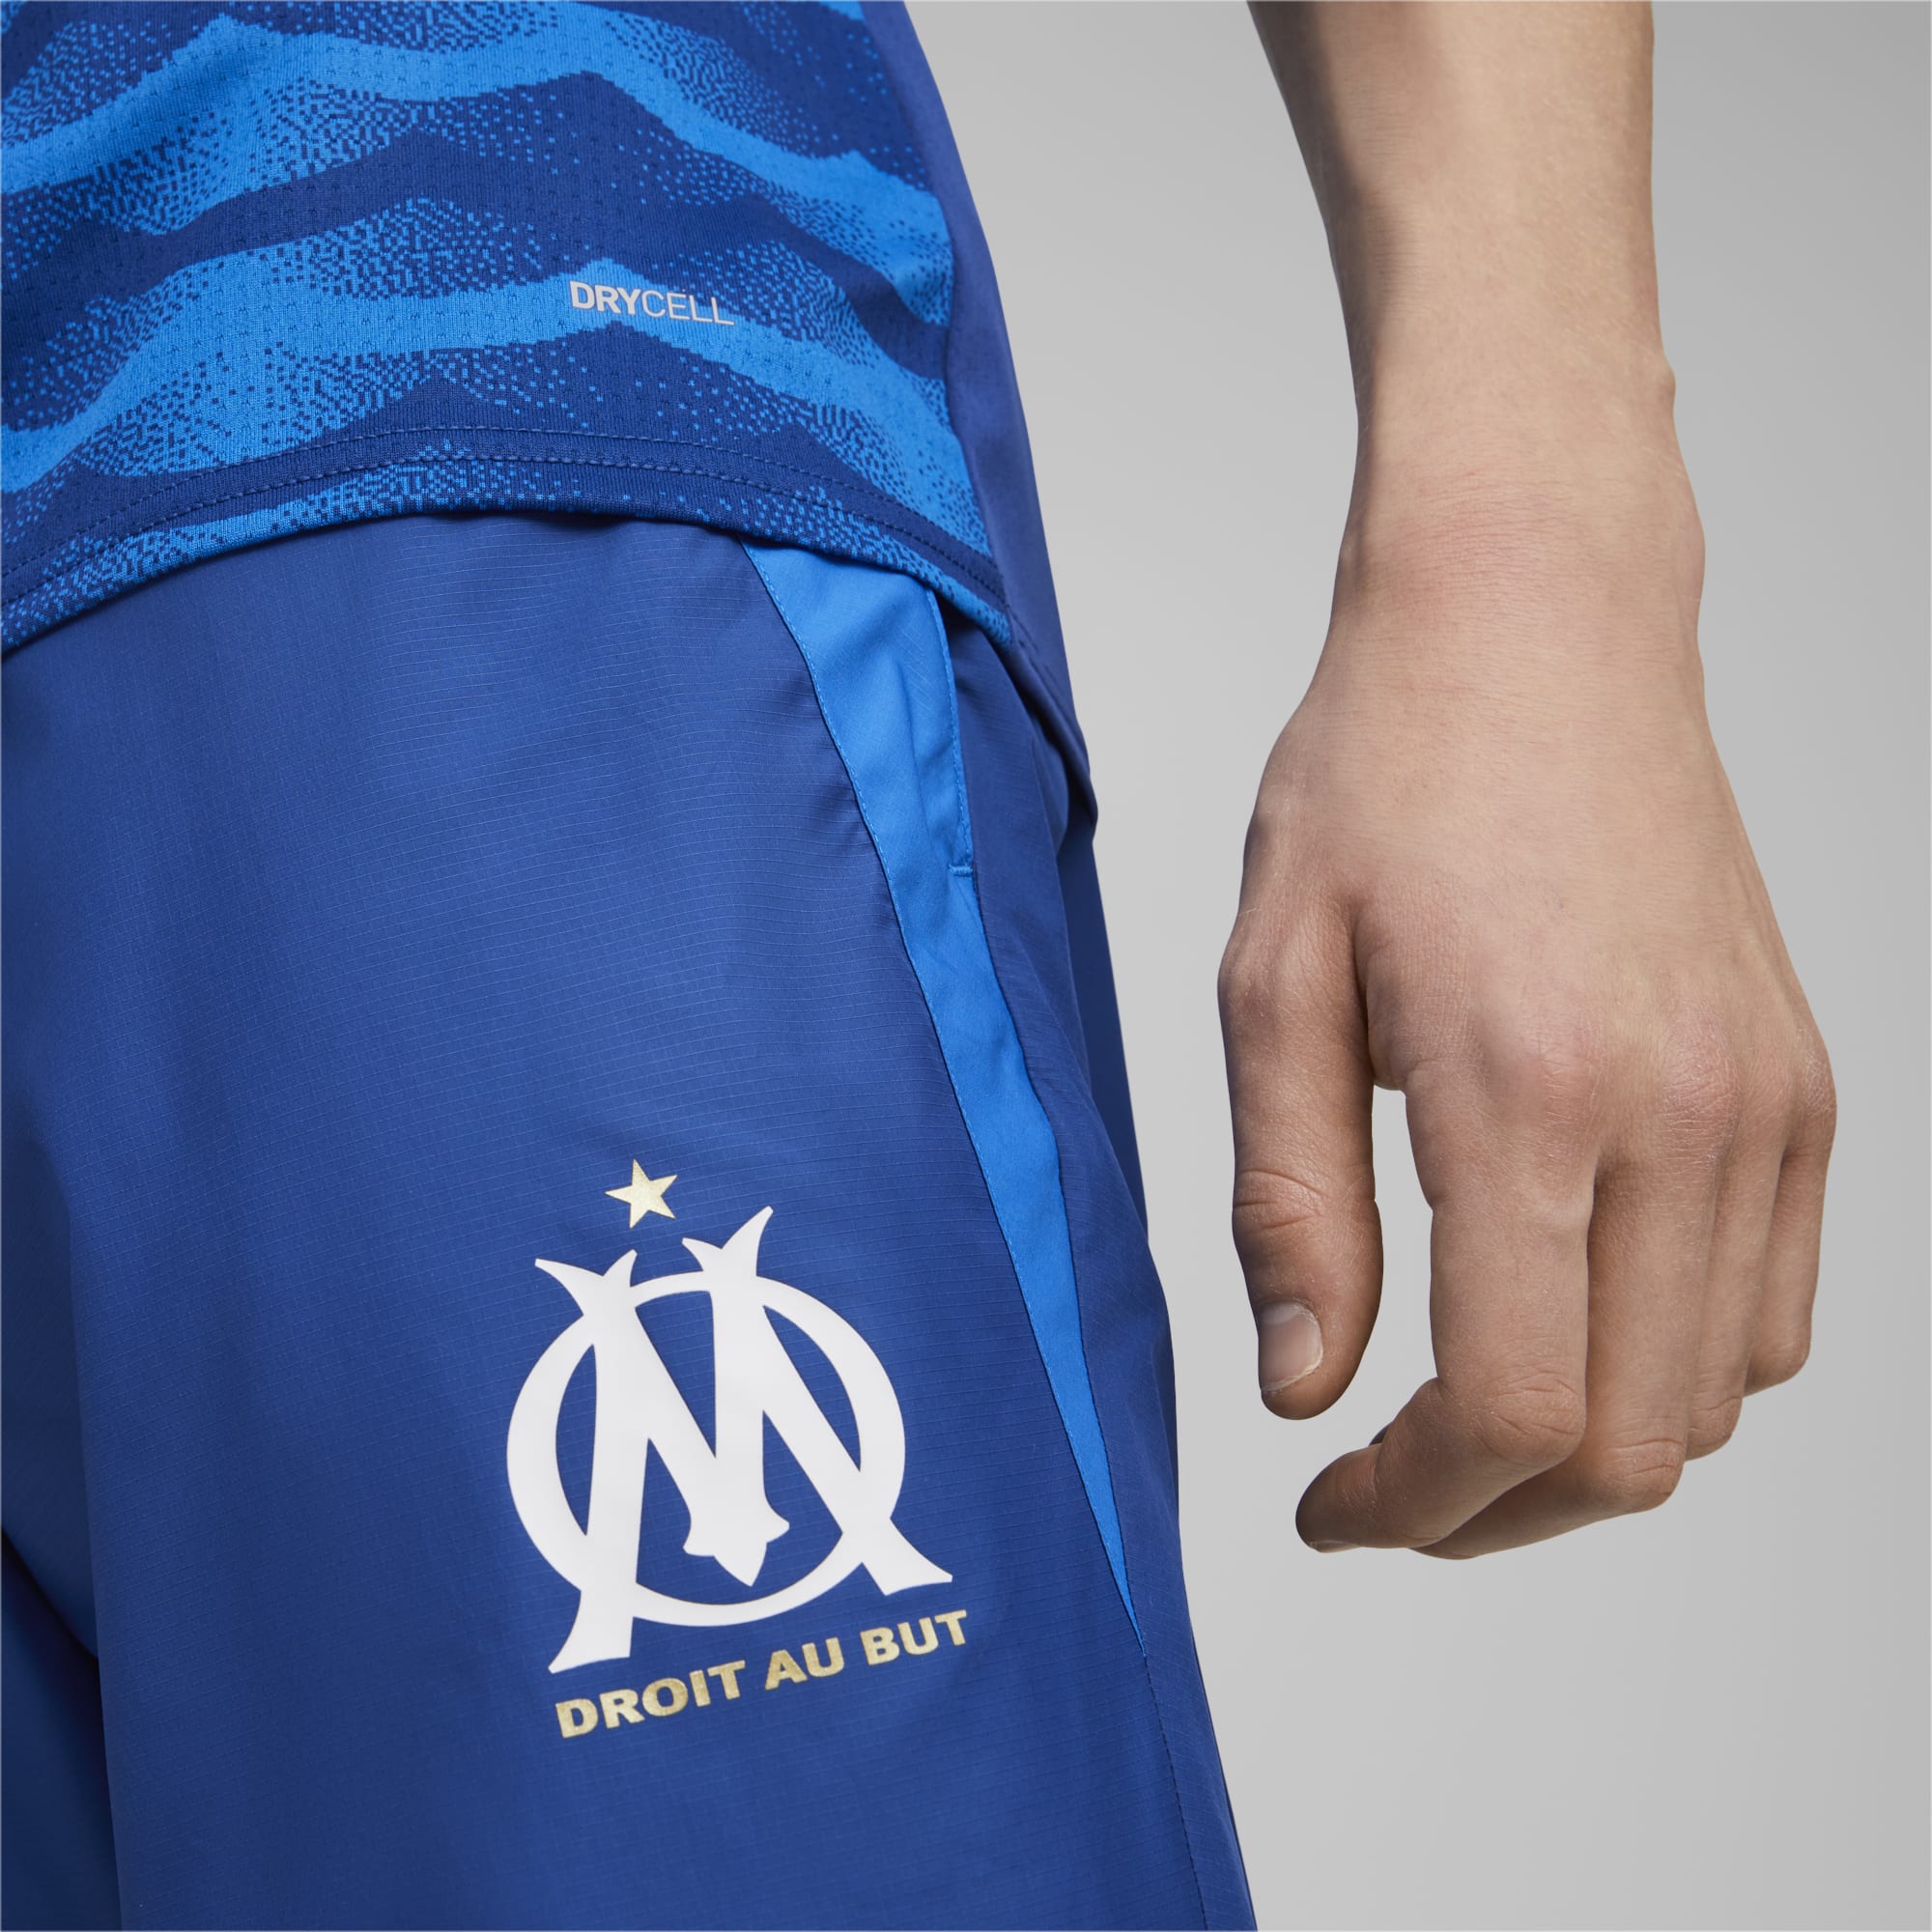 Men's PUMA Olympique De Marseille Prematch Football Pants, Royal Blue, Size M, Clothing